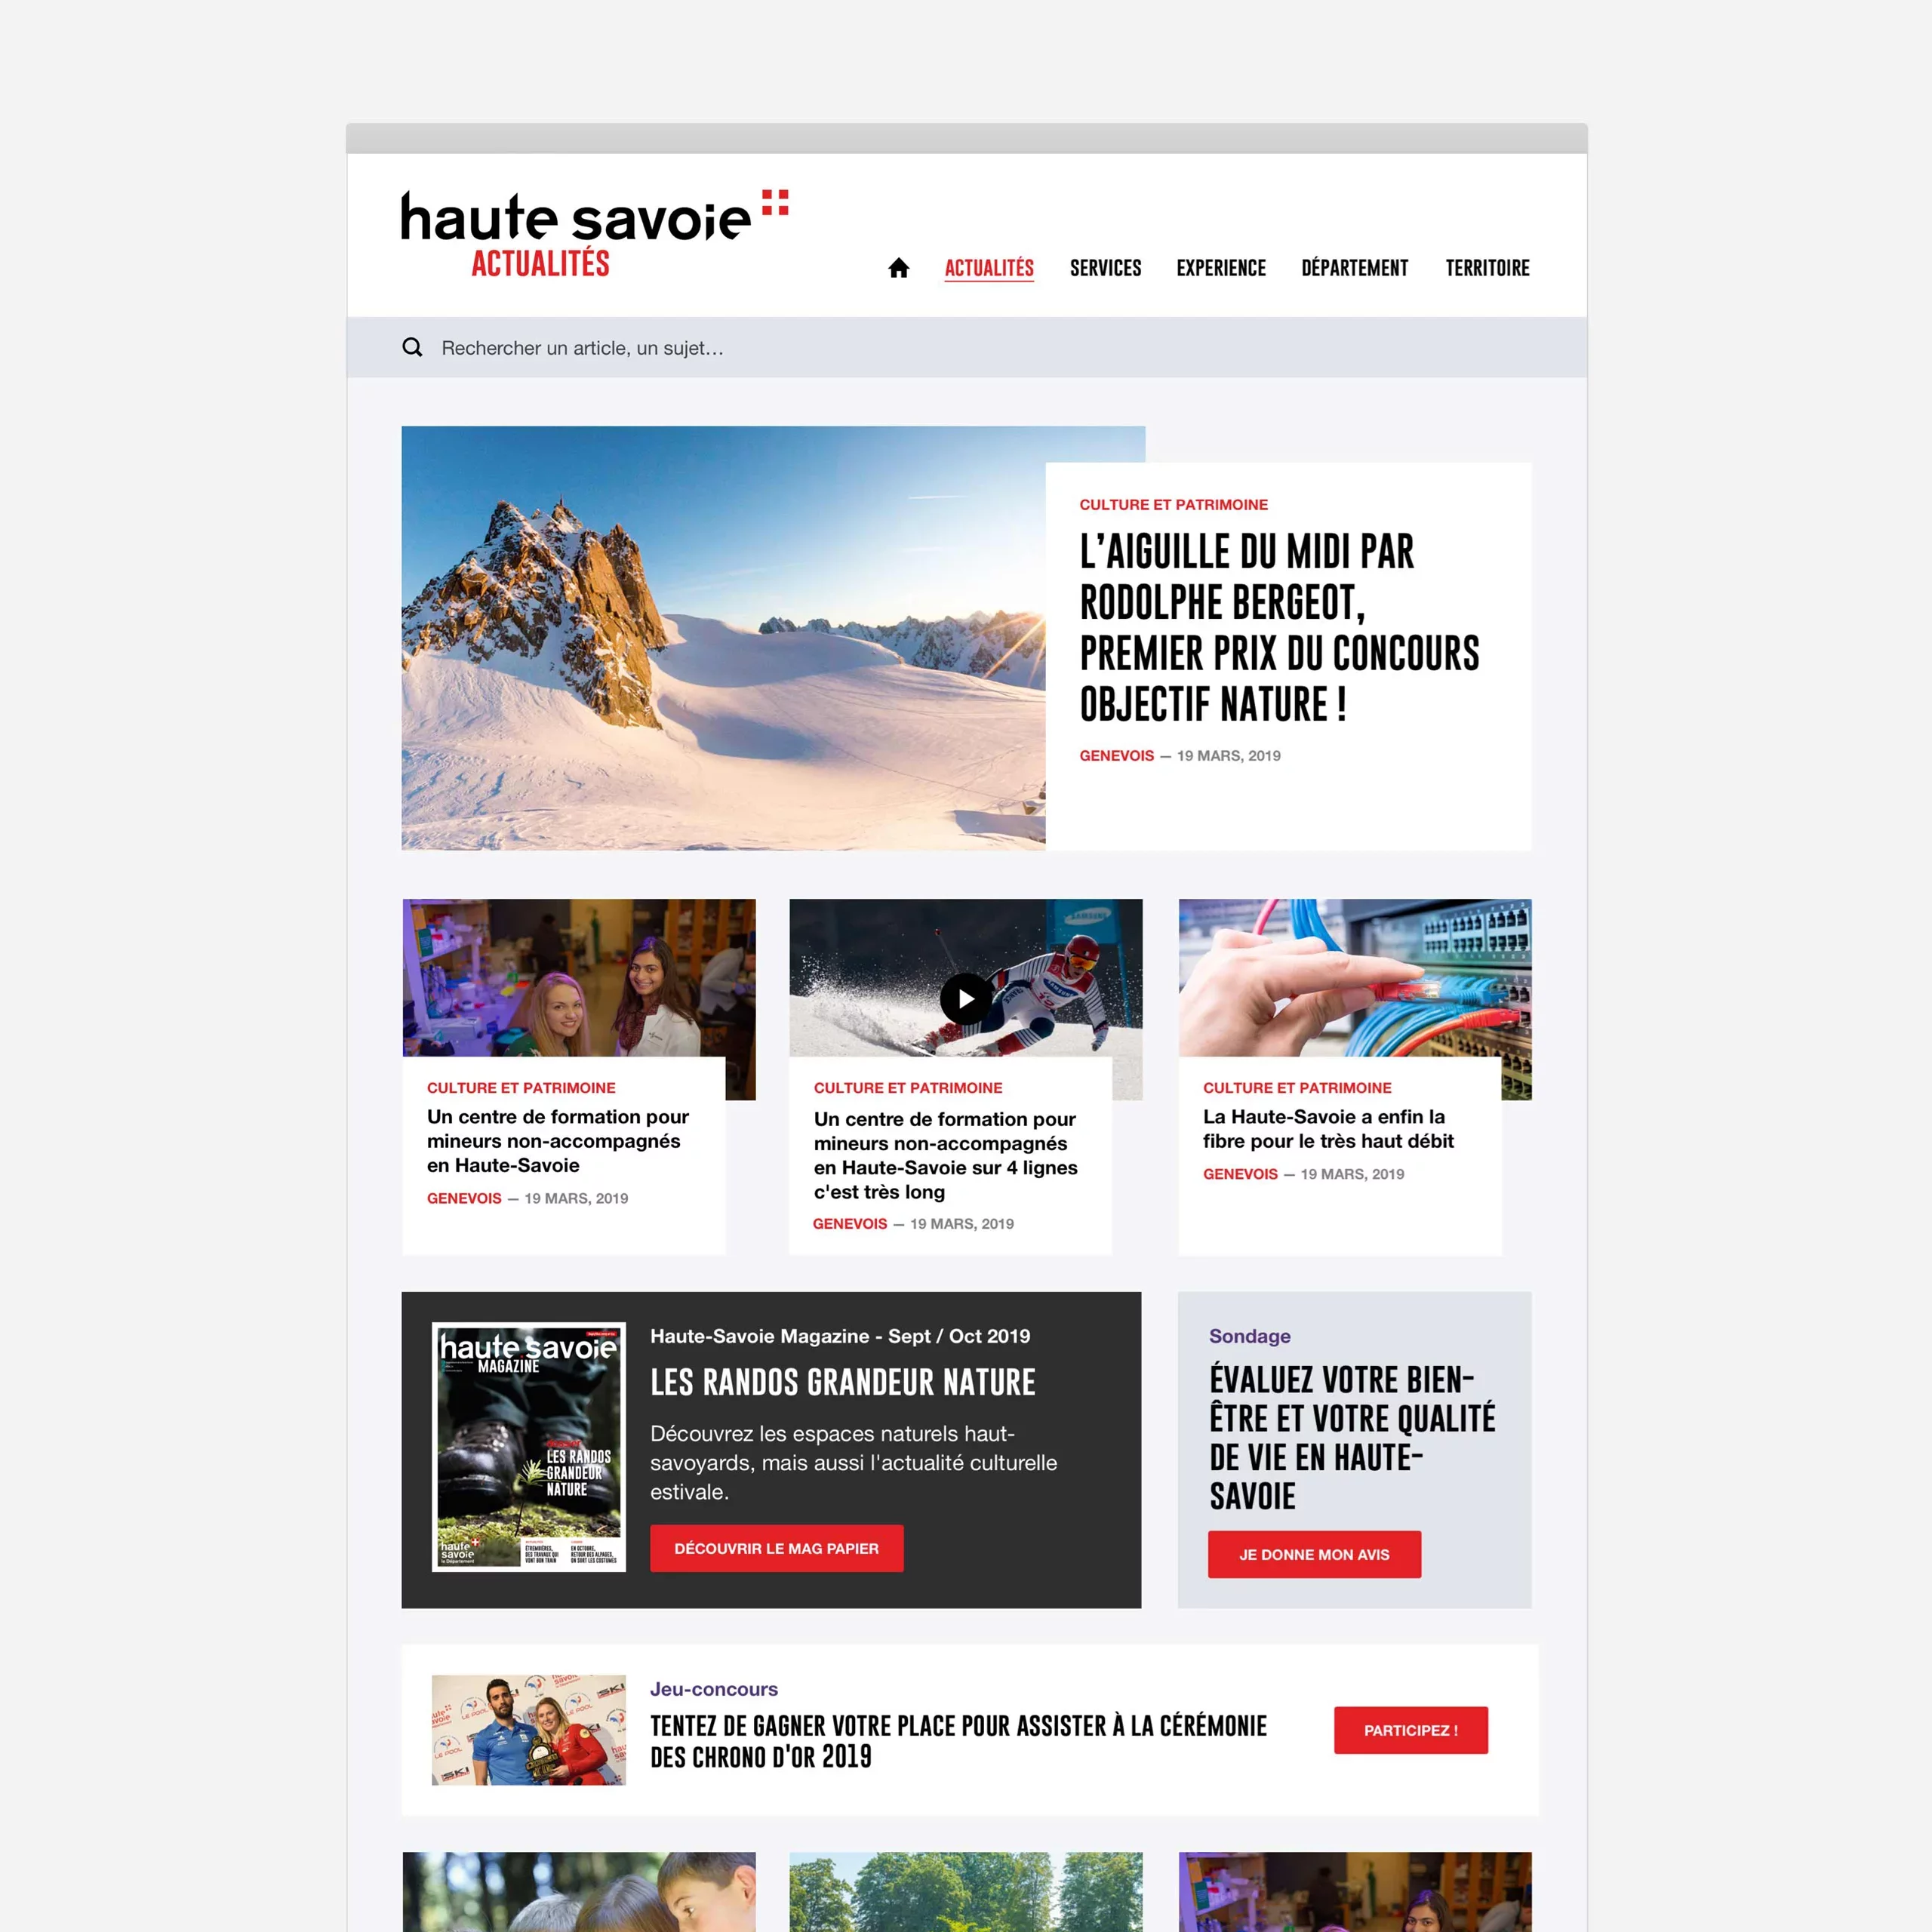 Maquette UI desktop de la page d'accueil du site d'actualités de la Haute-Savoie, avec une grande actu à la une, et le thème du mois mis en avant